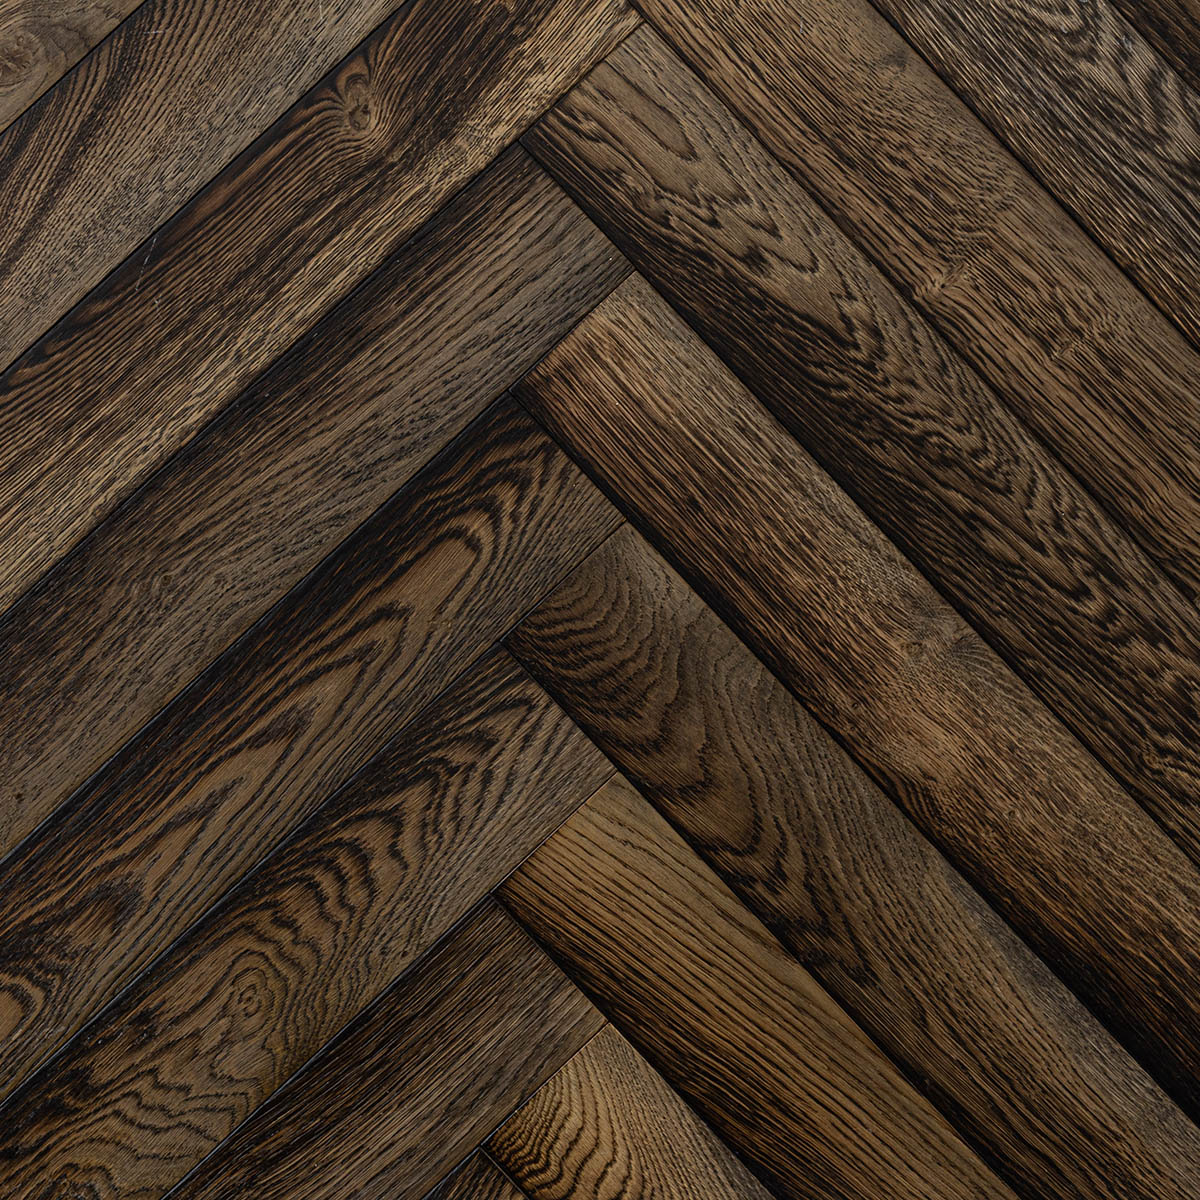 Dark brown herringbone parquet oak engineered wood flooring